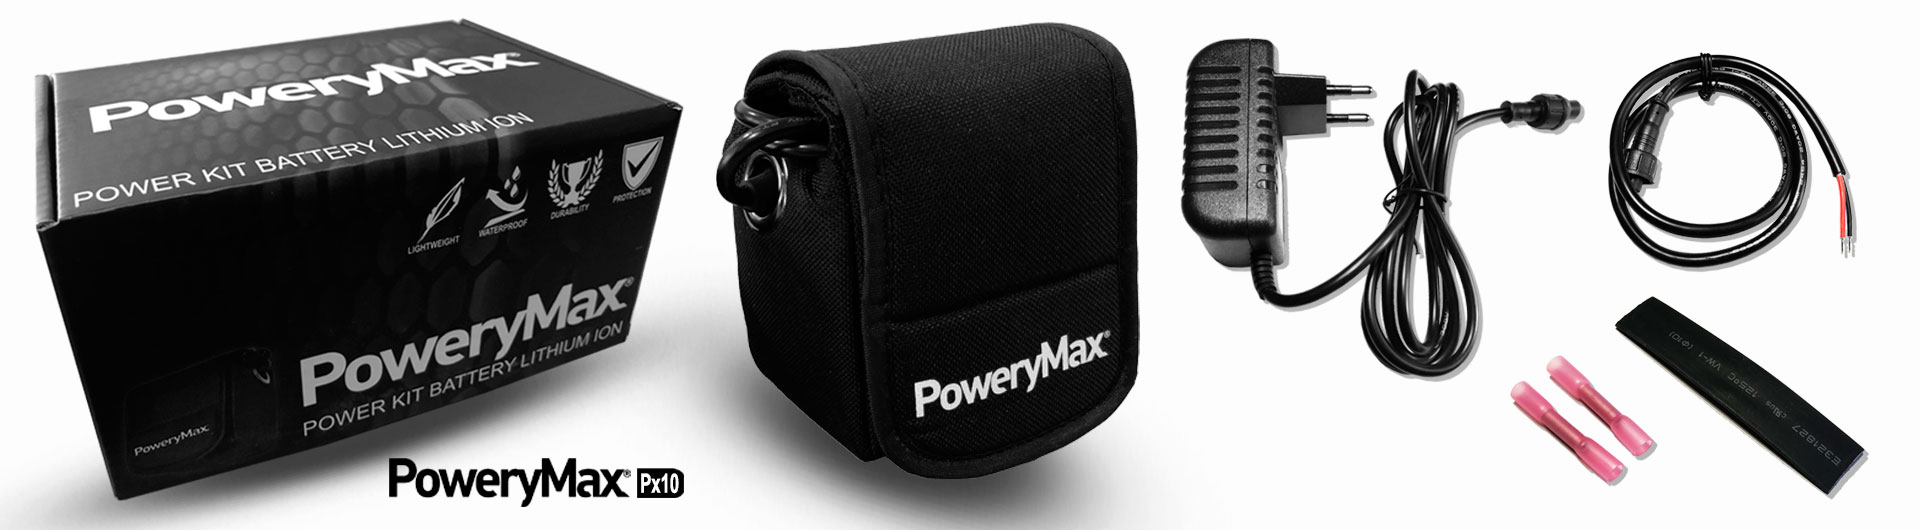 PoweryMax PX10